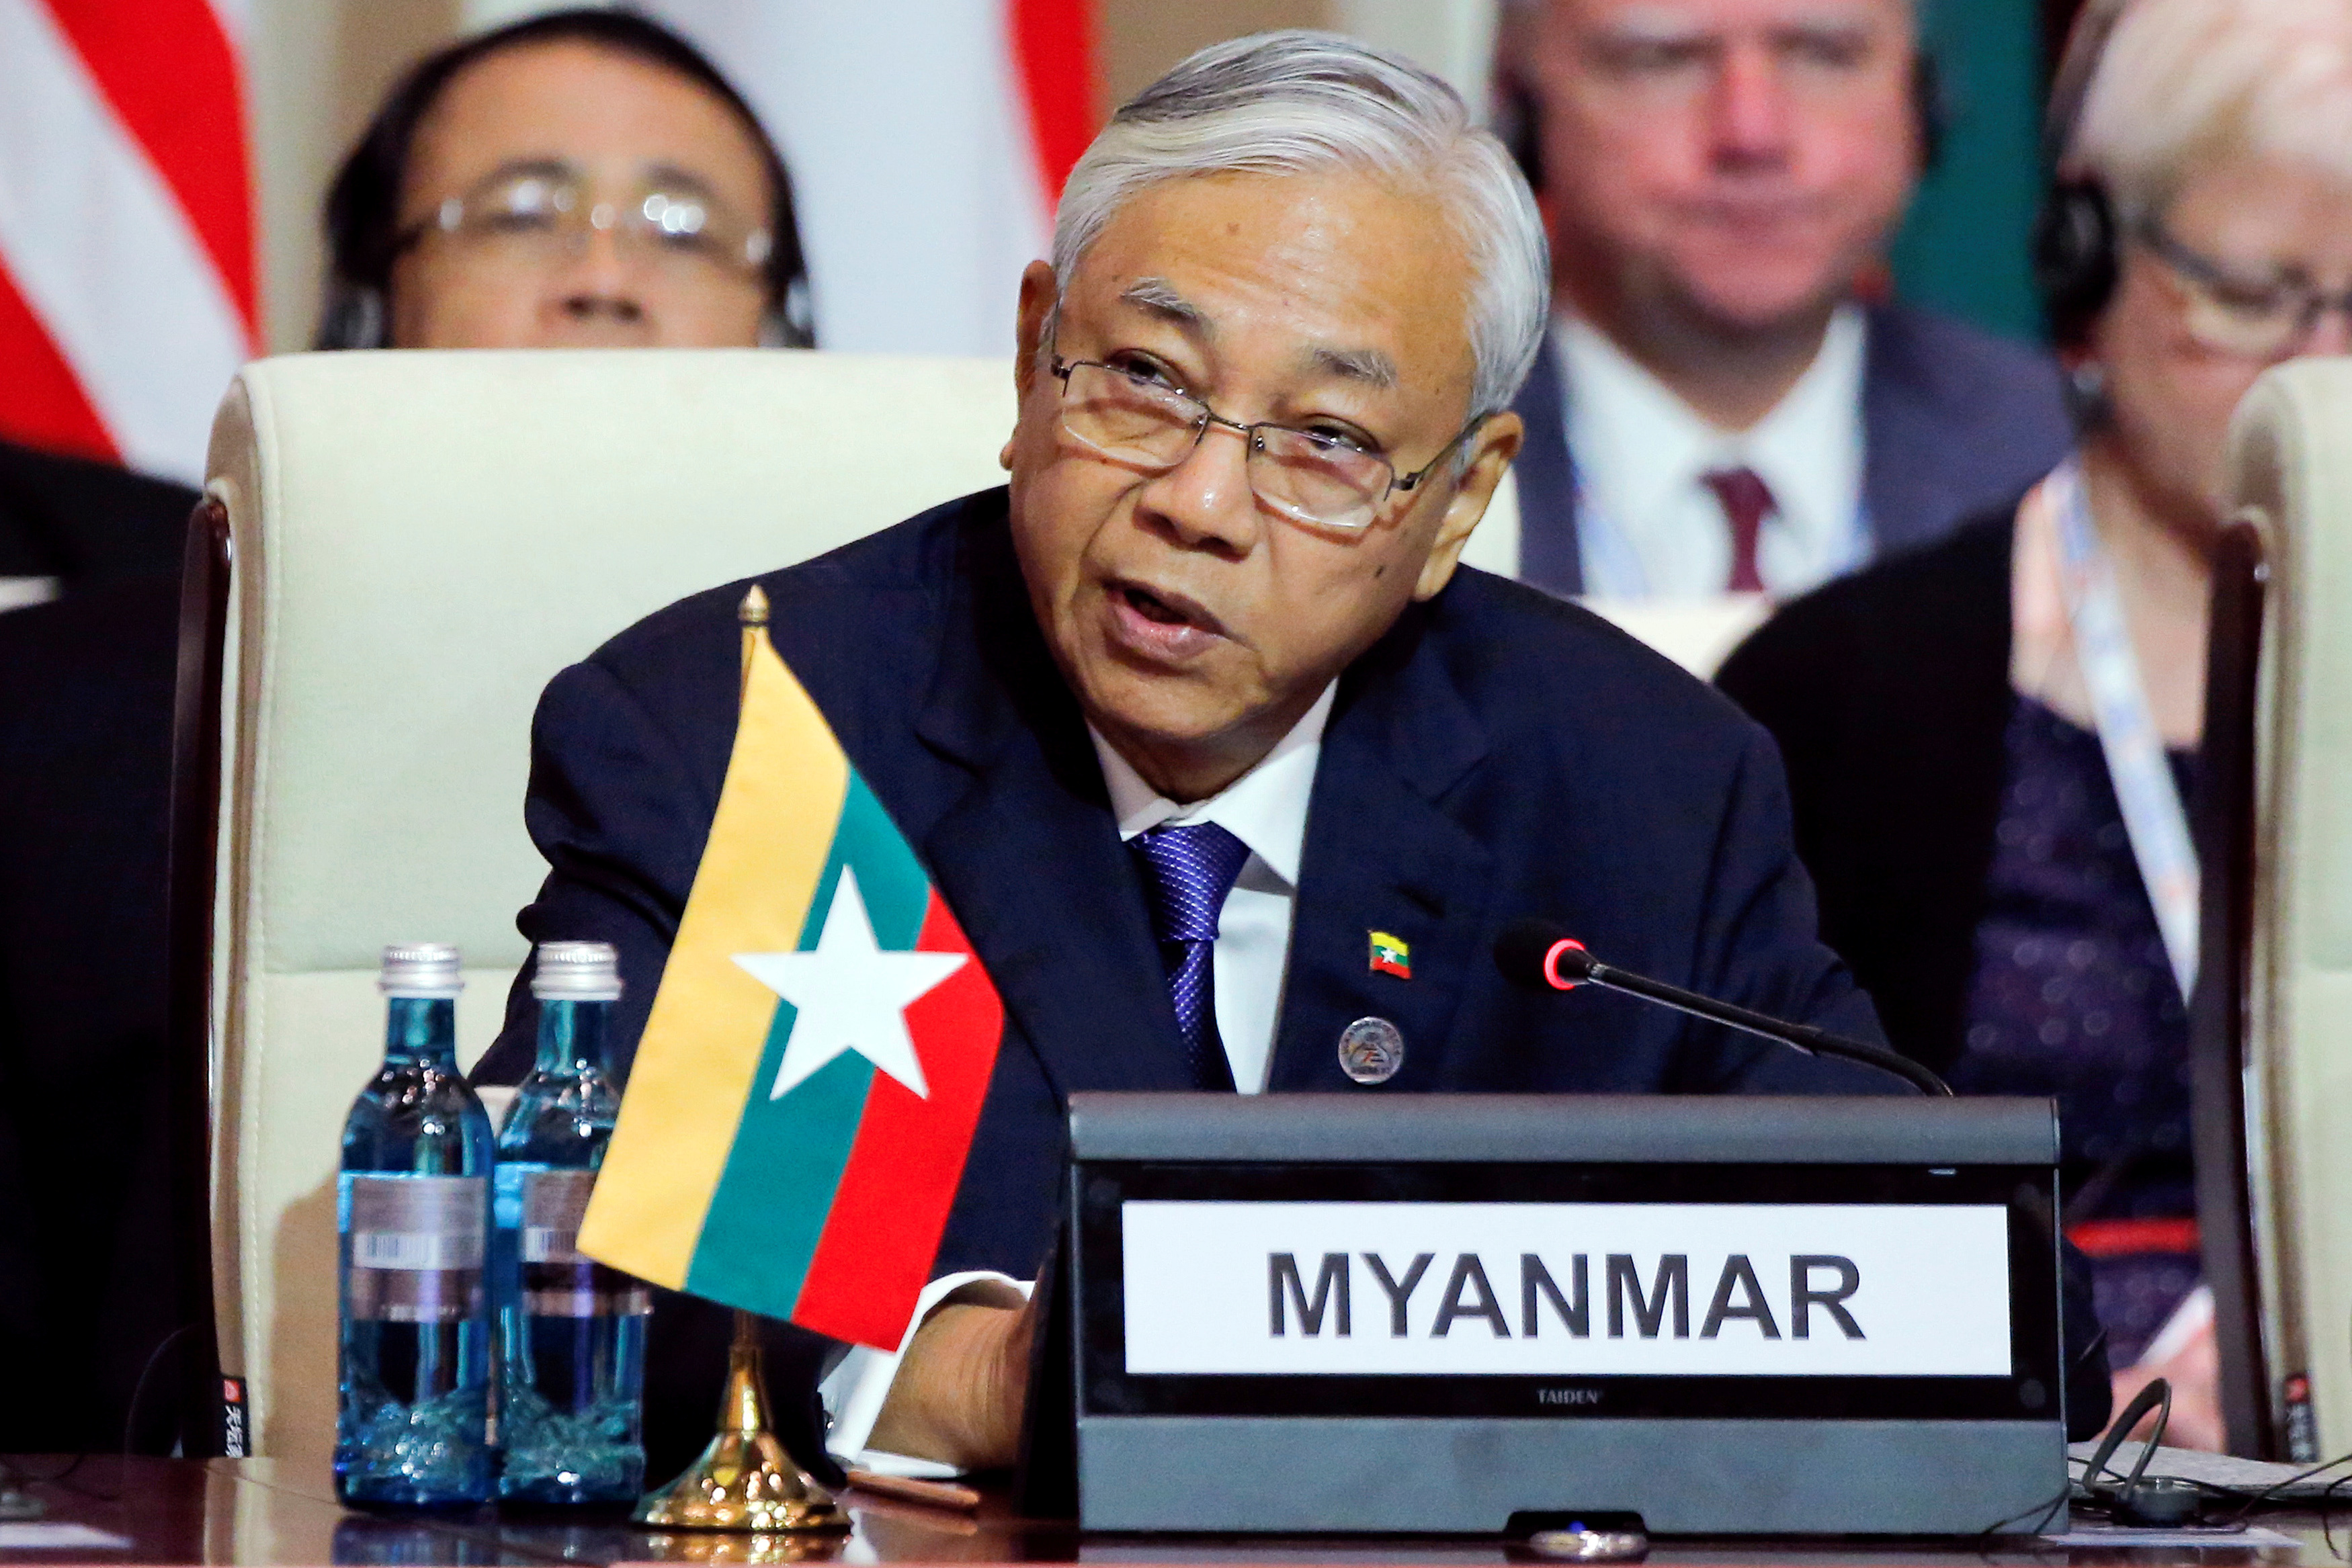 رئيس ميانمار هتين كياو